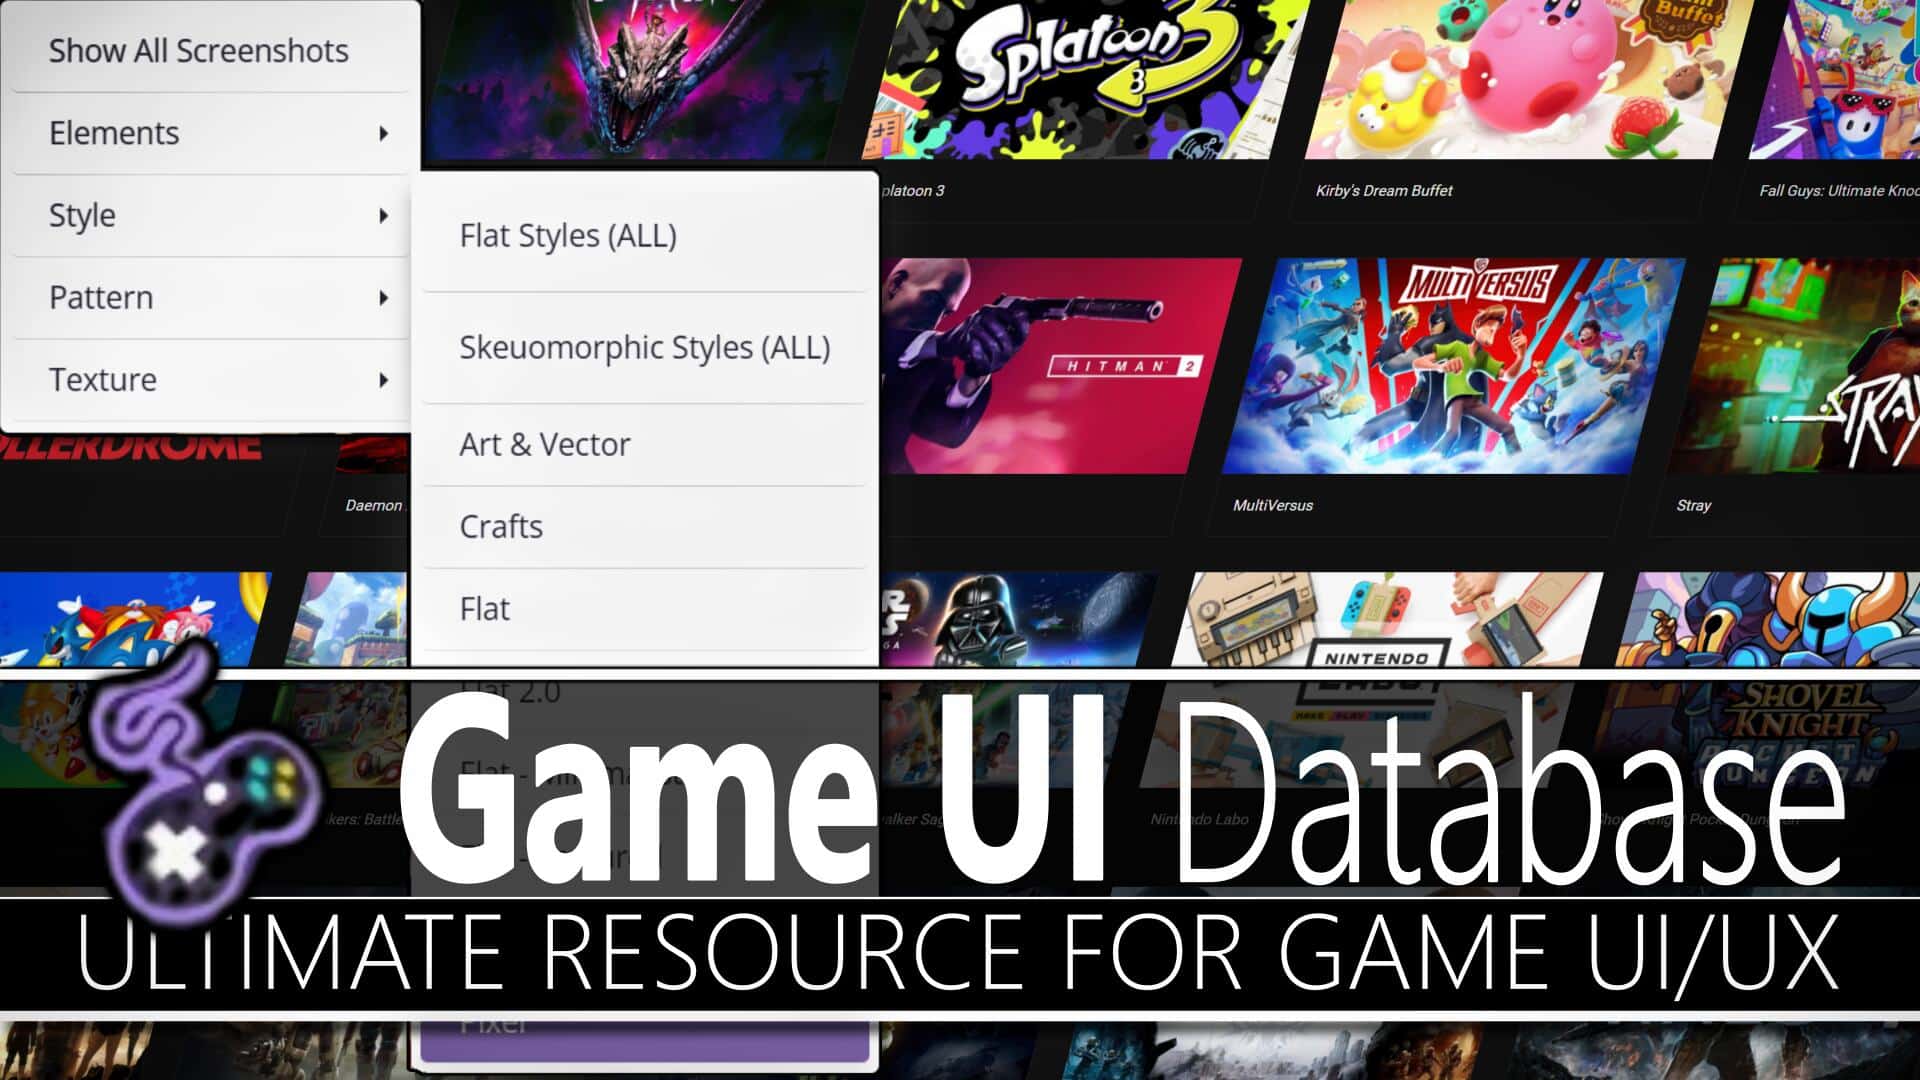 Settings: Menu  Game UI Database